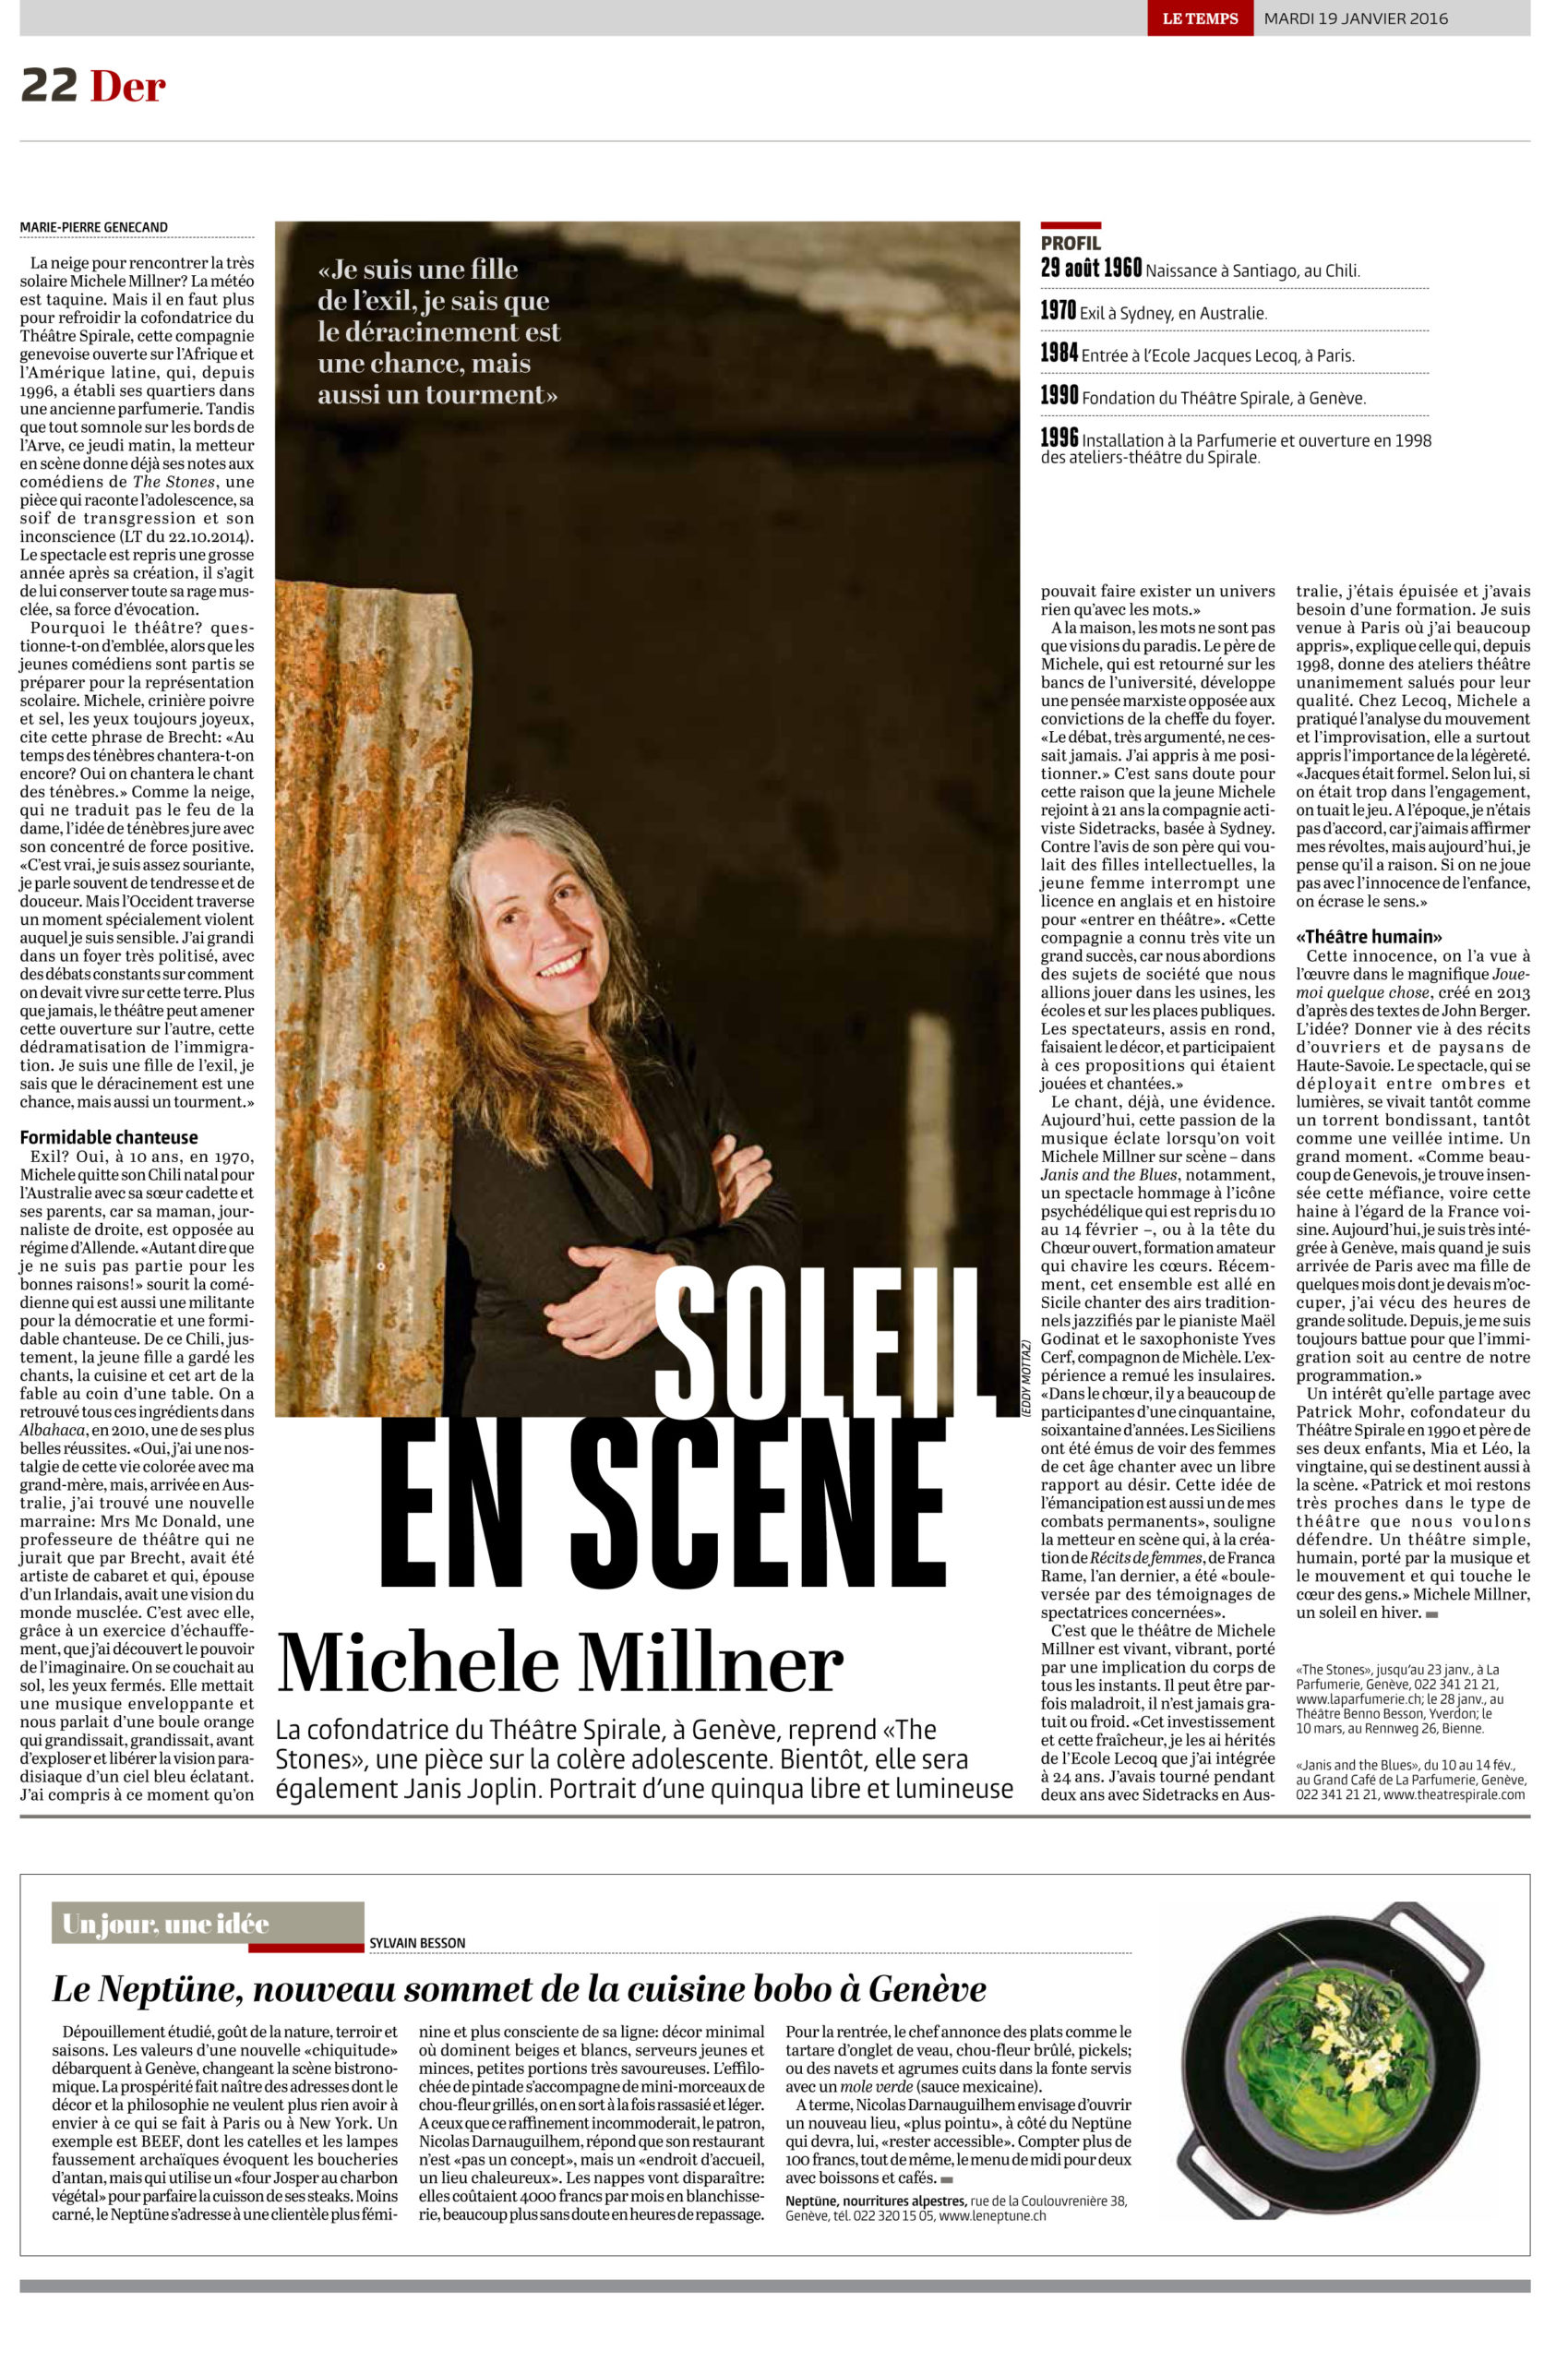 Portrait Michele Millner – Le Temps 19.01.2016